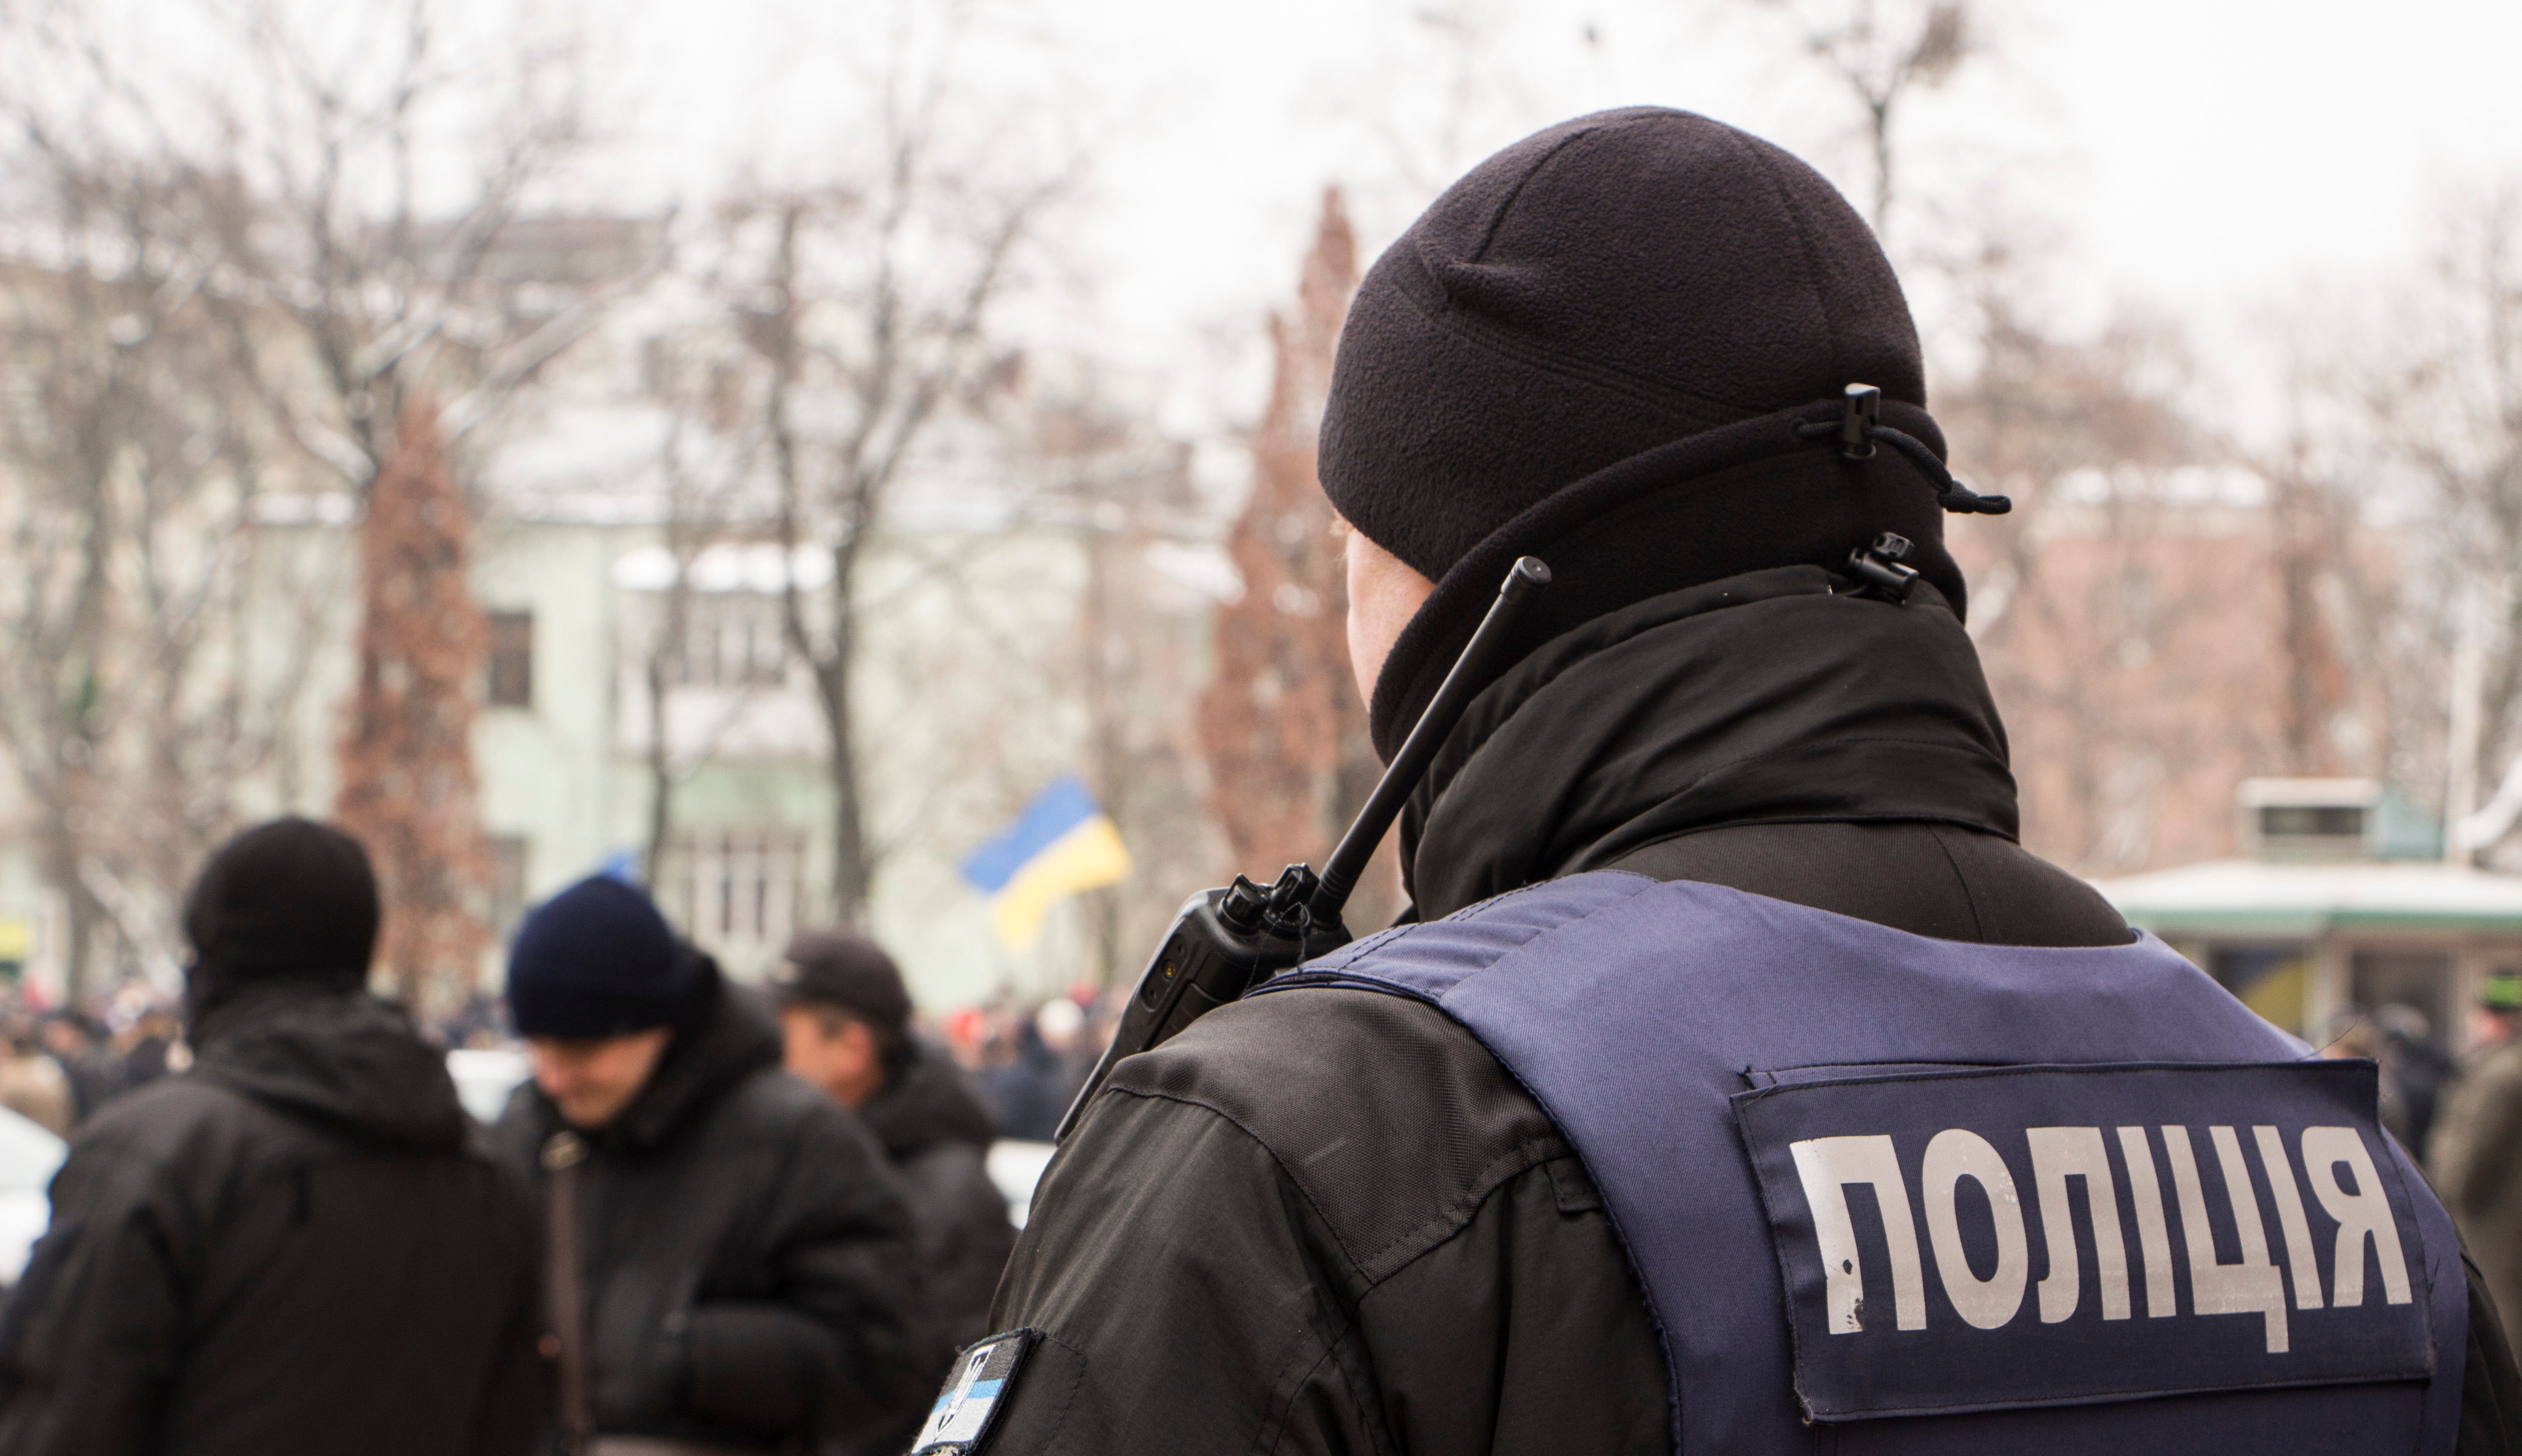 Ucraina: nell’ultimo anno sono stati segnalati oltre 600 crimini collegati al mondo delle criptovalute